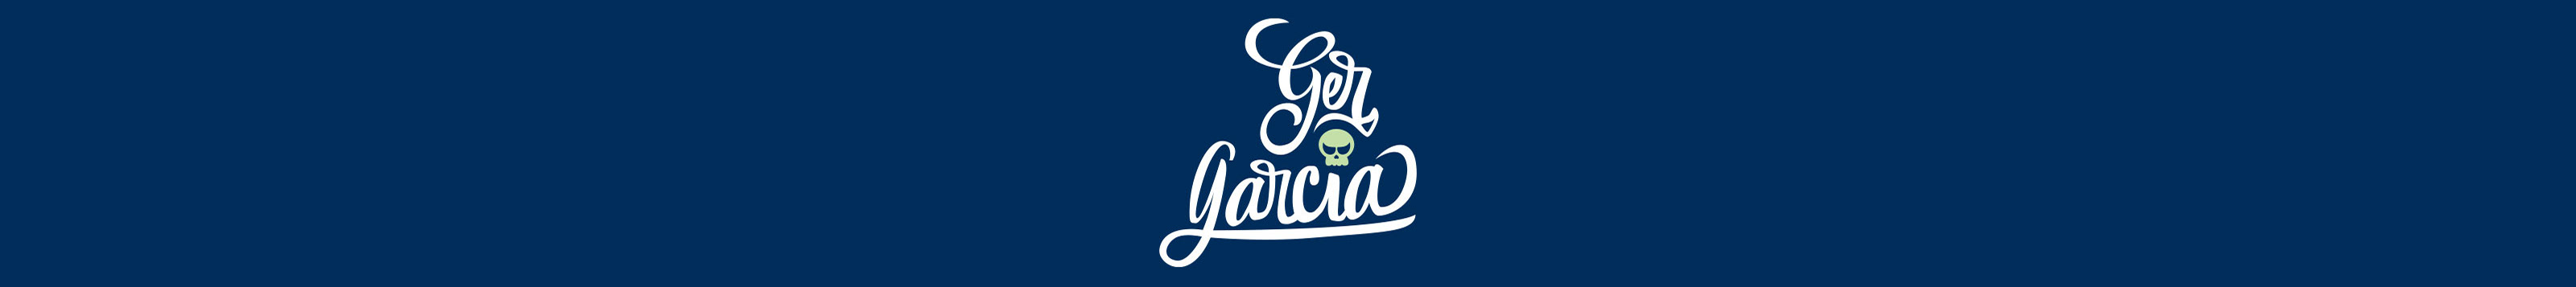 Banner del profilo di Ger Garcia